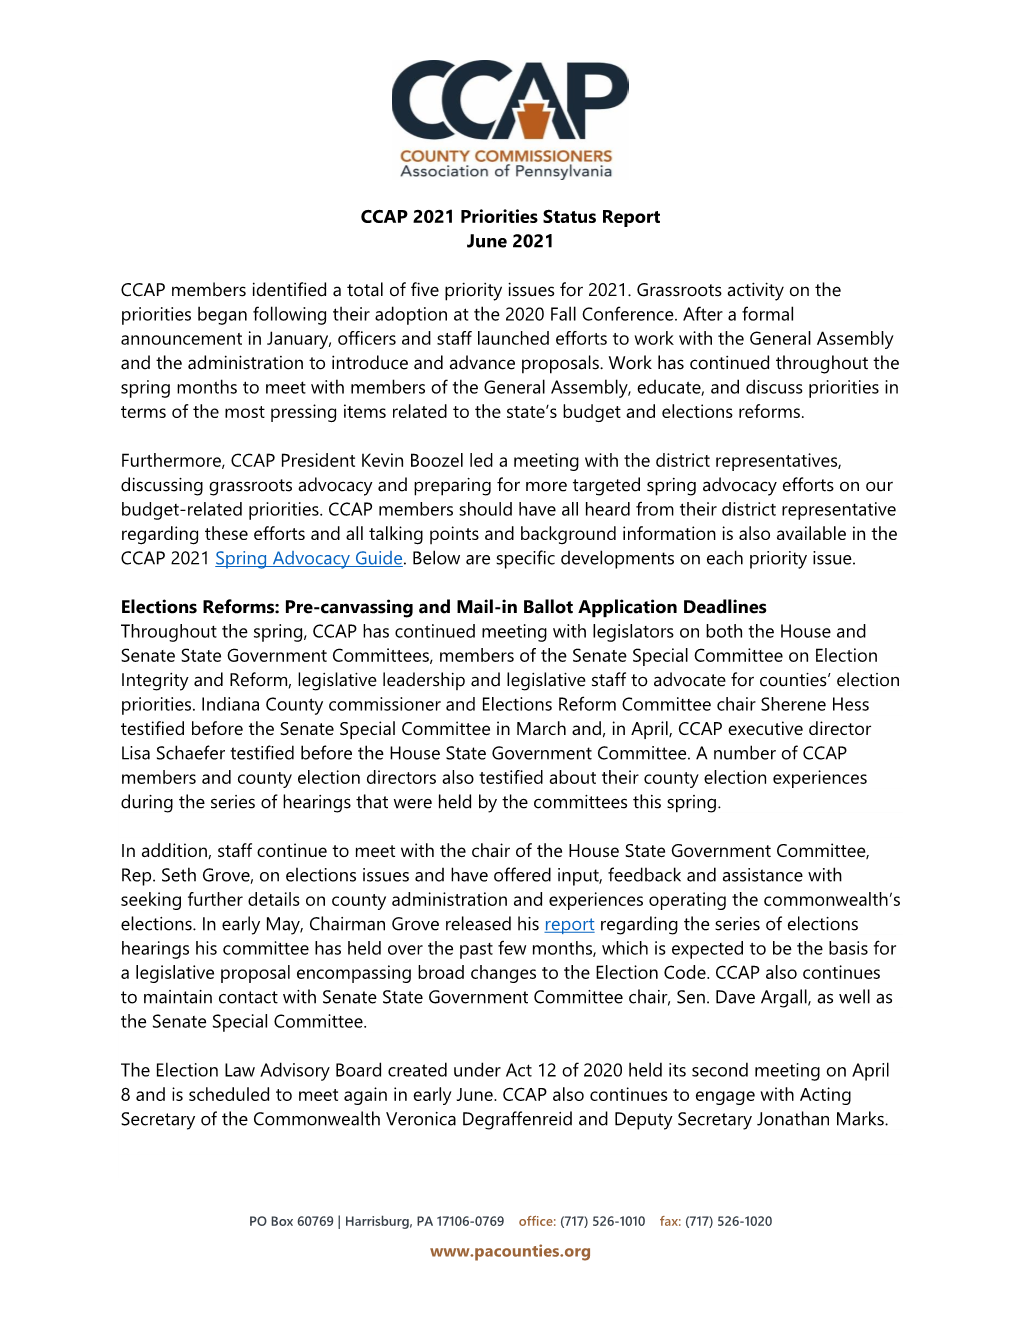 CCAP 2021 Priorities Status Report June 2021